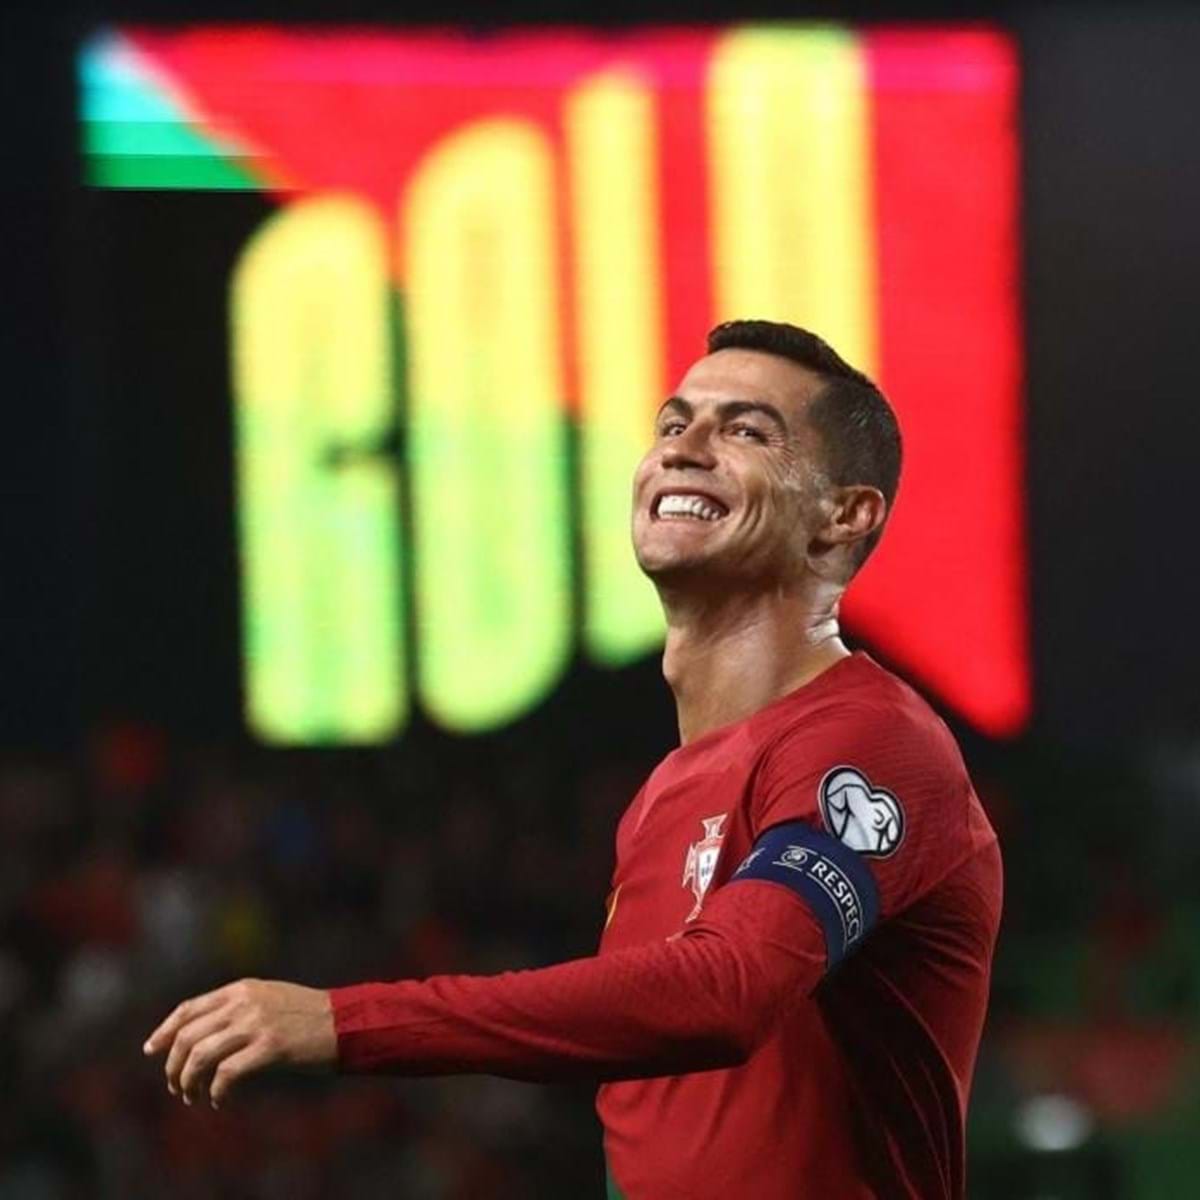 Cristiano Ronaldo a um jogo da internacionalização 200 por